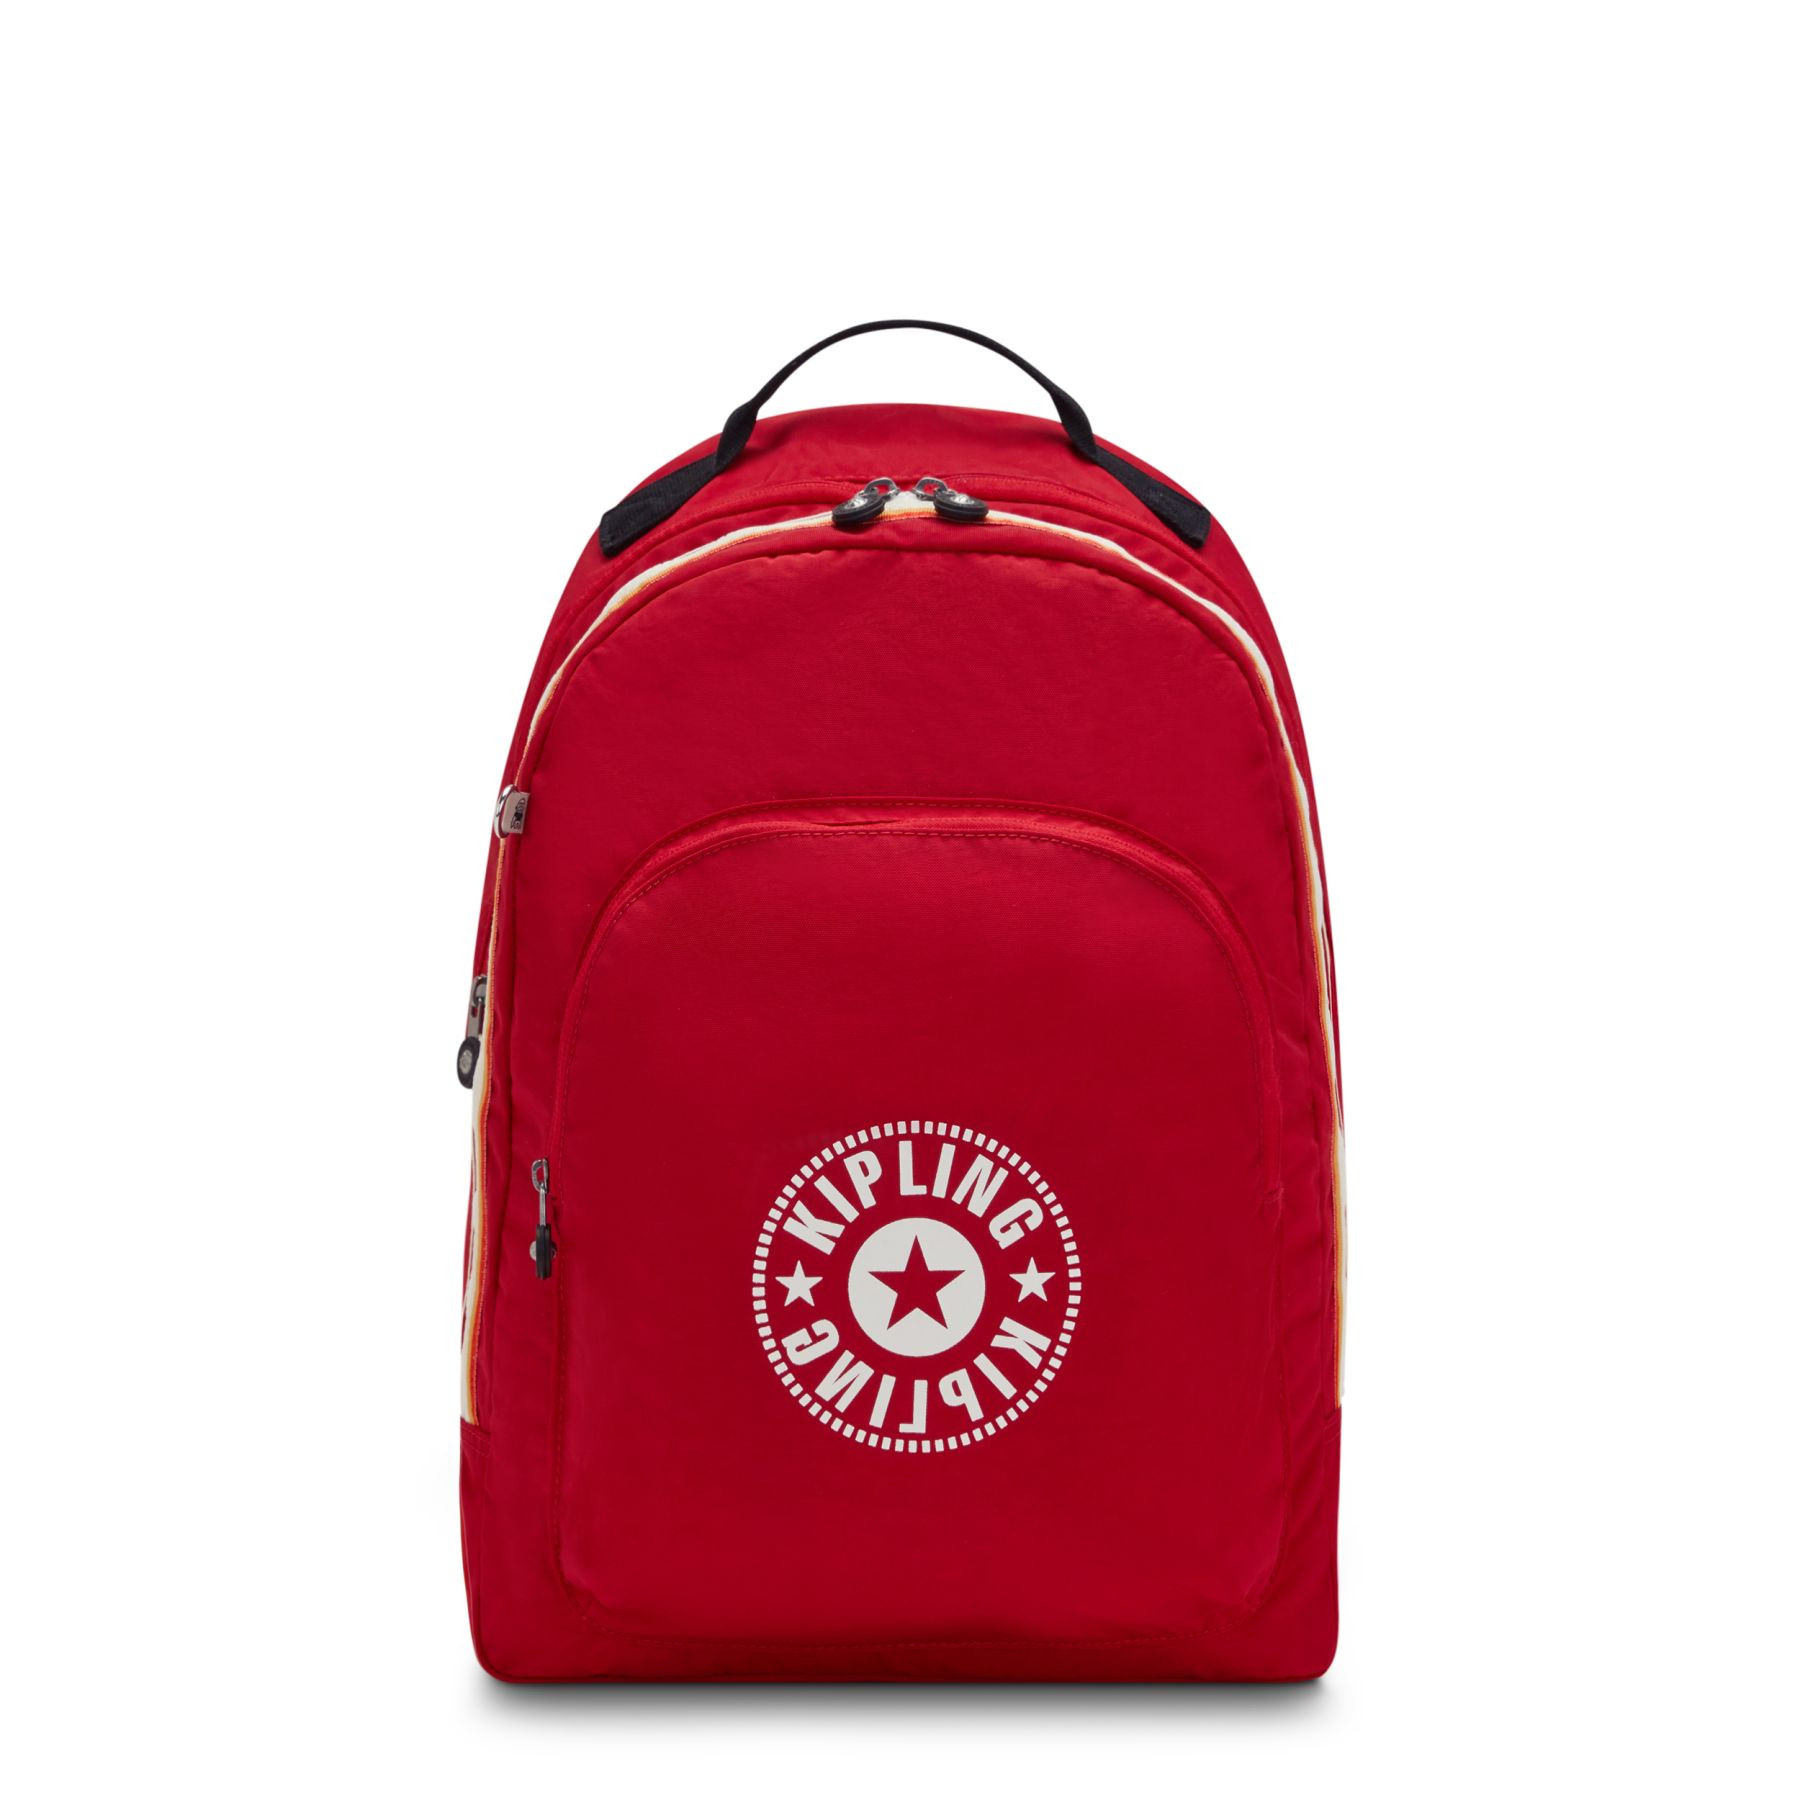 Backpack Curtis XL Red Rouge - KIPLING